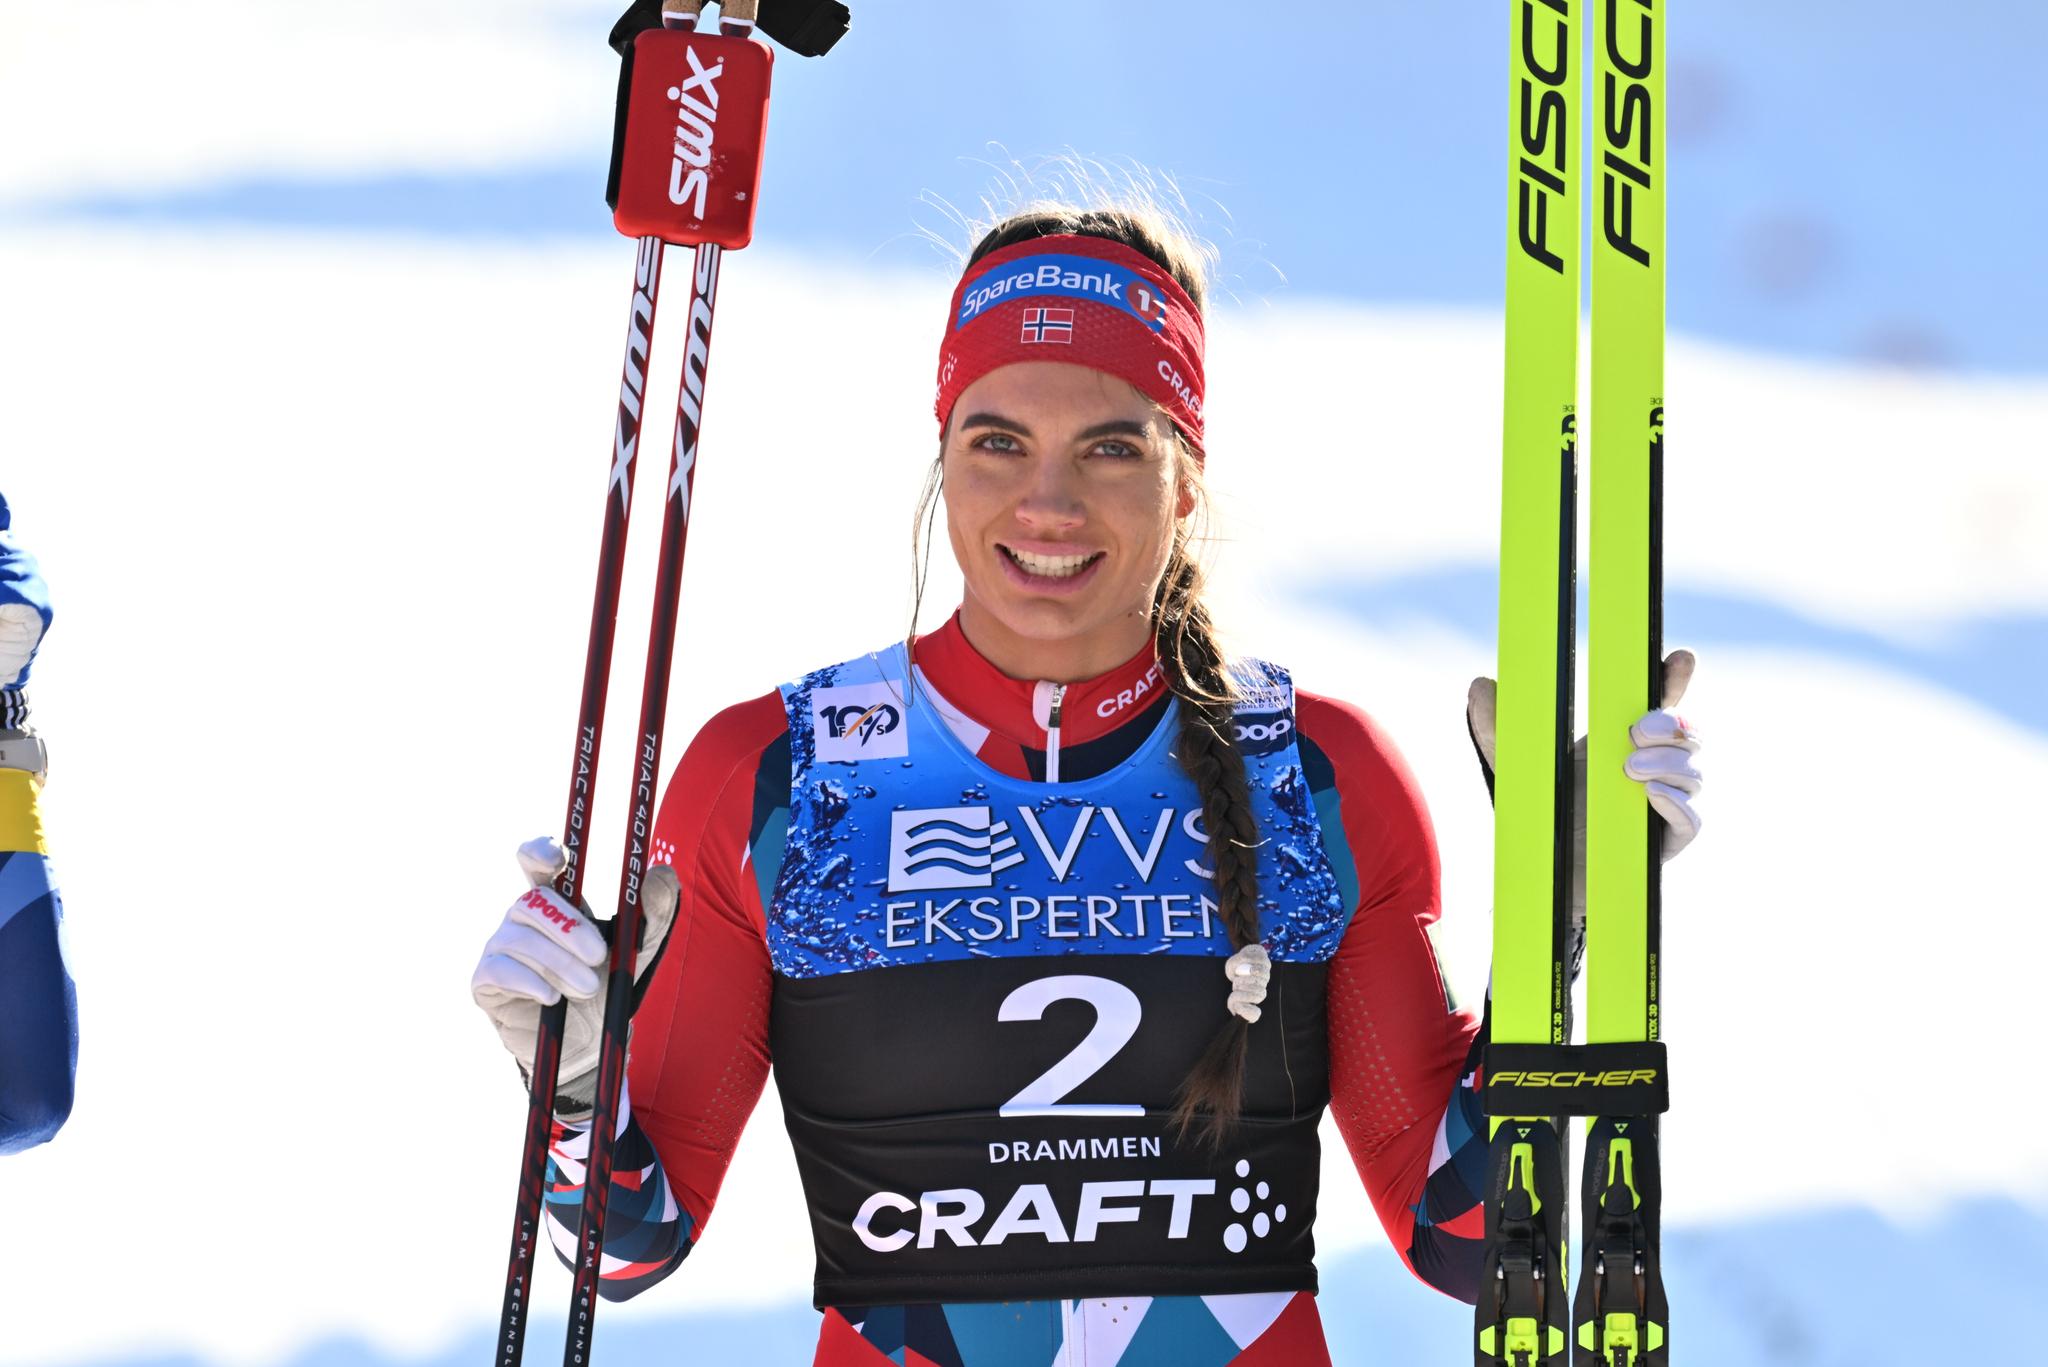  Kristine Stavås Skistad, her   avbildet tidligere denne sesongen.